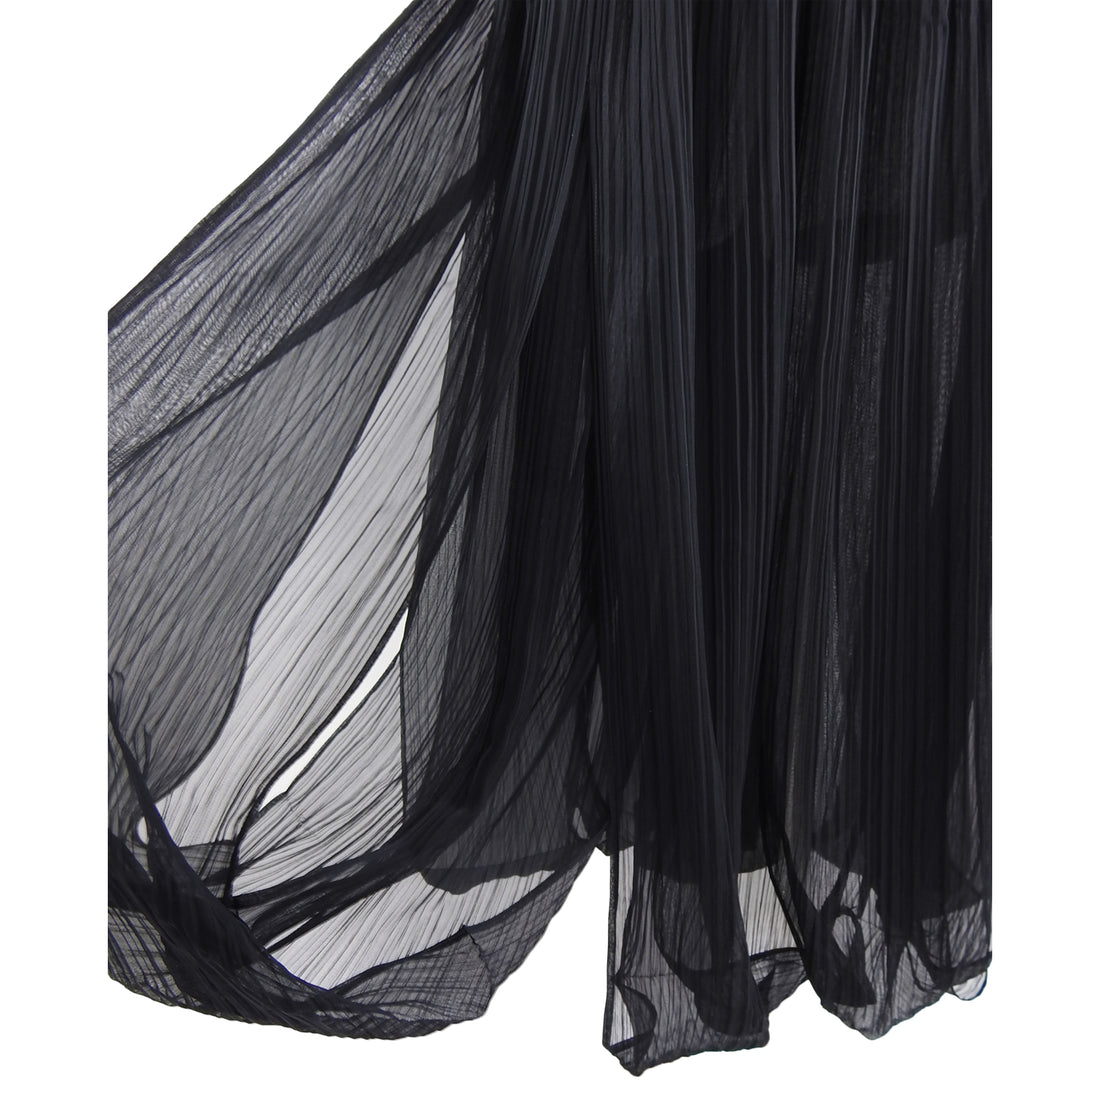 Issey Miyake Black Sheer Loop Pleated Long Maxi Skirt - 10